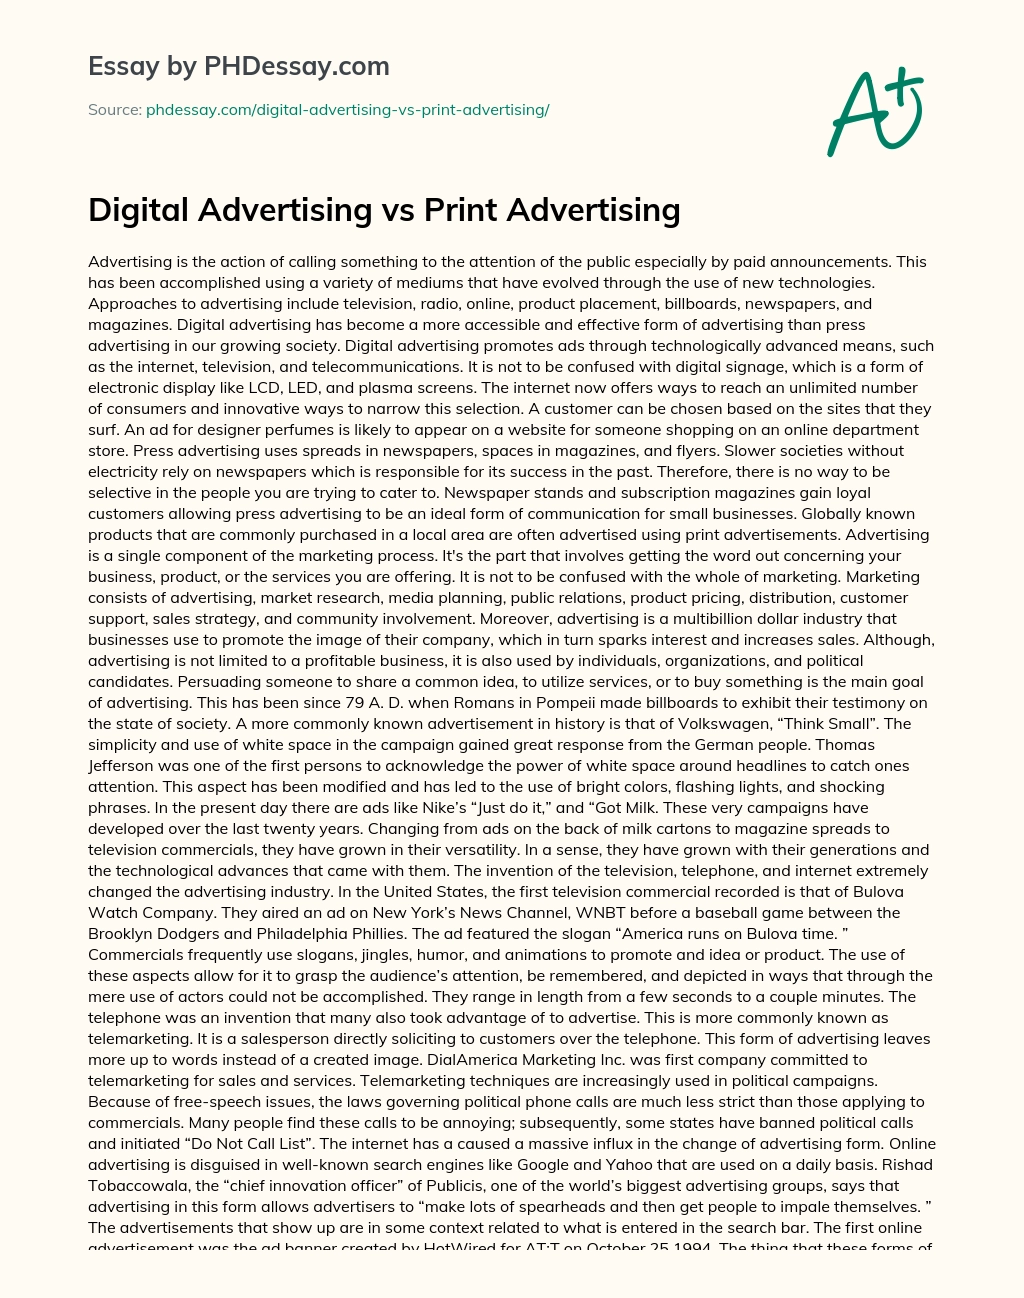 Digital Advertising vs Print Advertising essay